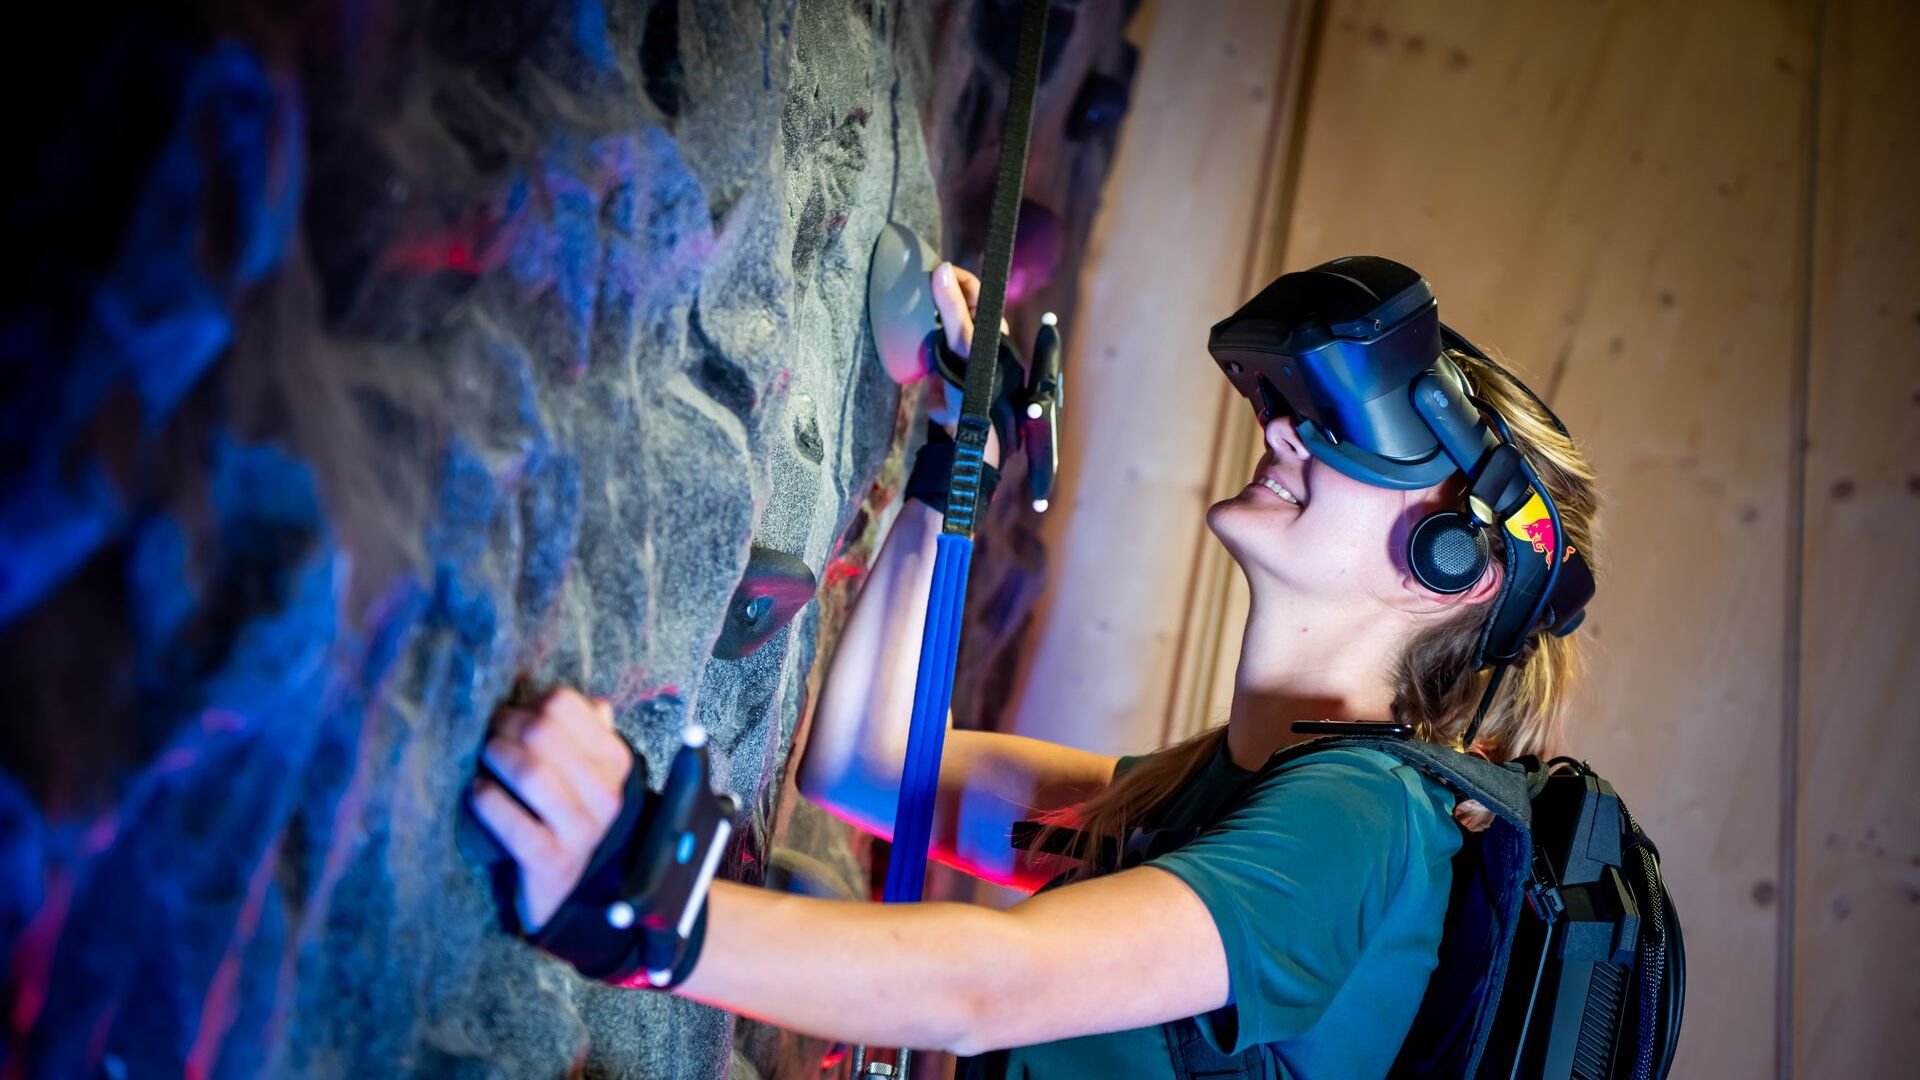 在卢塞恩的瑞士交通博物馆，可以通过虚拟现实护目镜和攀岩安全带“武装”虚拟攀登马特洪峰：这是瑞士红牛和各种合作伙伴发起的名为“The Edge Matterhorn”的倡议VR”，通过它复制了采尔马特的登山向导 Jérémie Heitz 和 Sam Anthamatten 的真实攀登，还提供了风、振动、纹理和众多物体或场景元素的 4D 效果